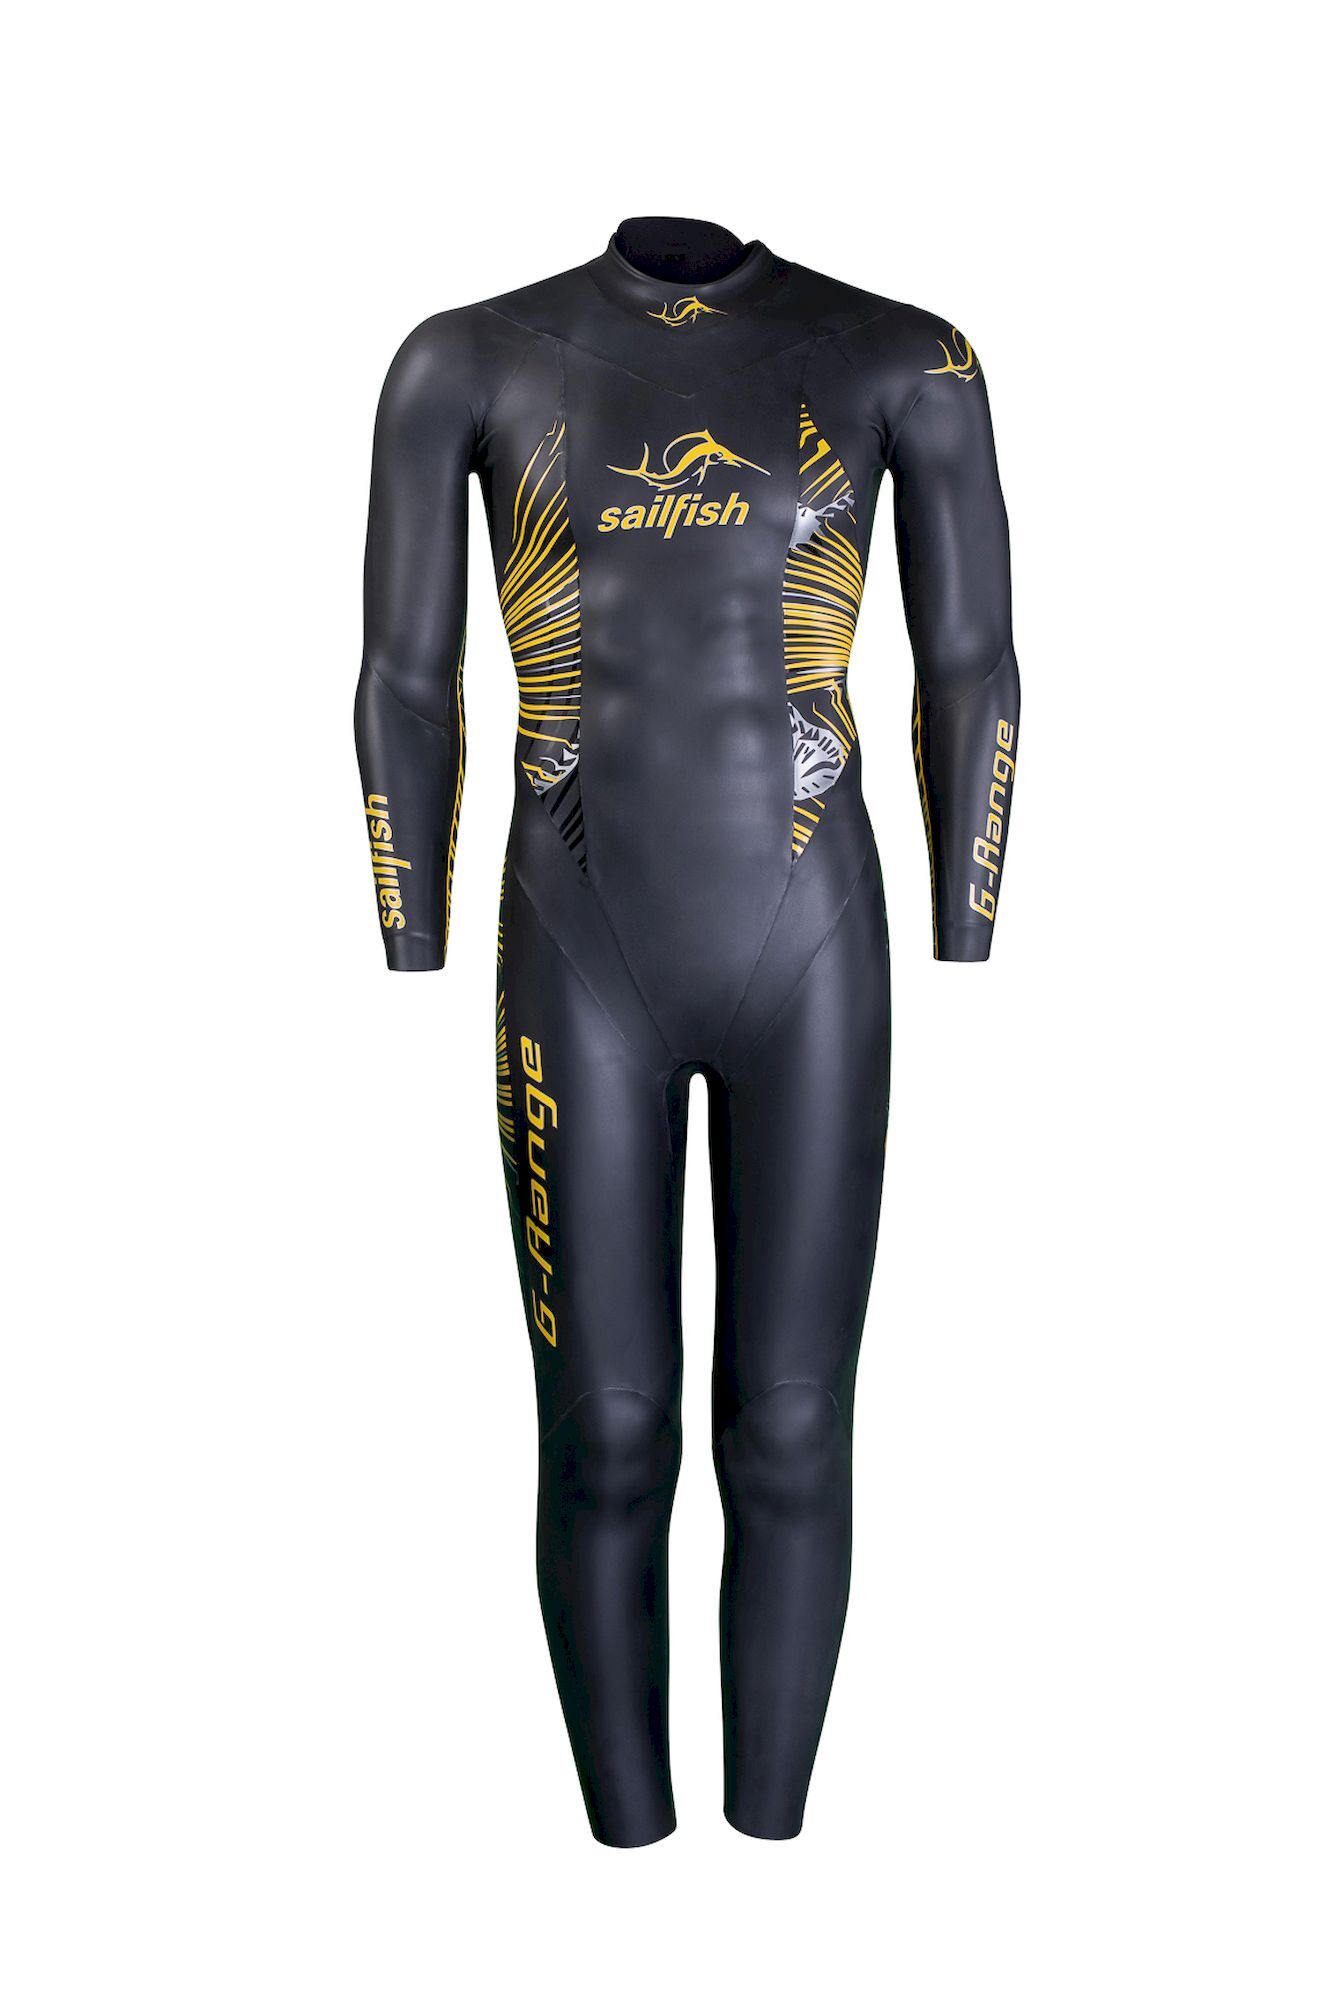 Sailfish Wetsuit Mens G-Range 8 - Combinaison néoprène homme | Hardloop